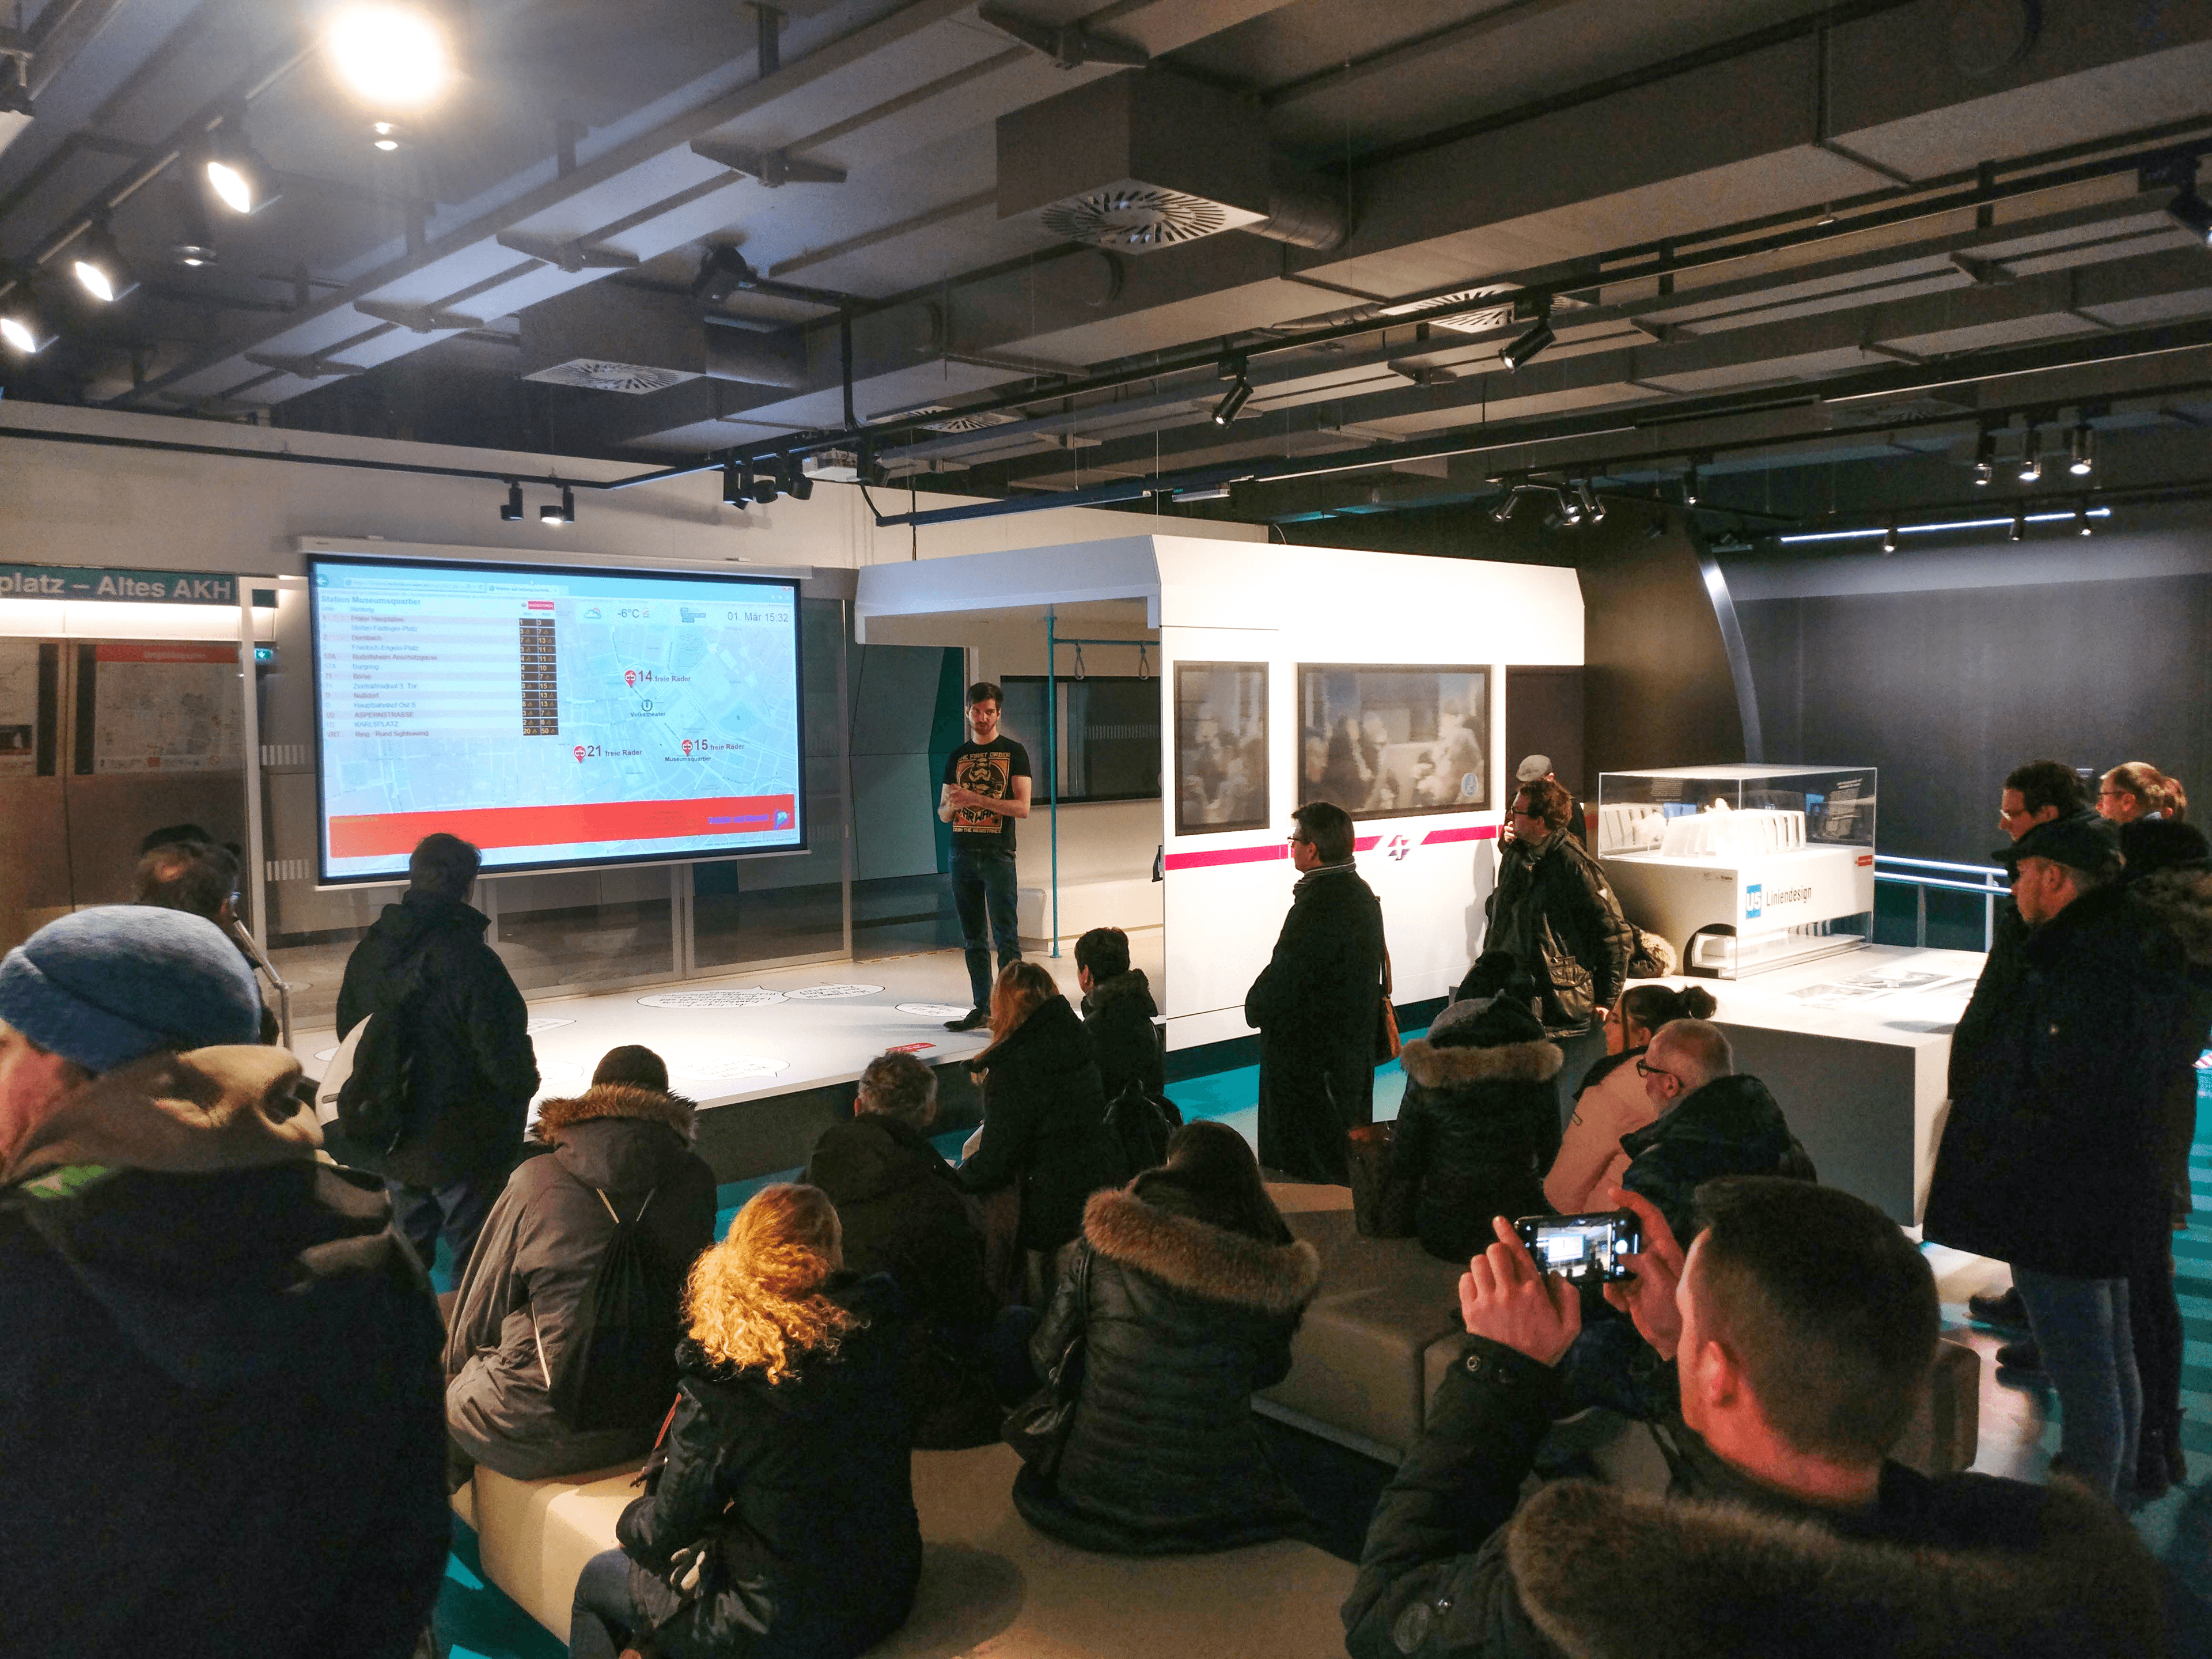 Foto vom Datenspaziergung - gezeigt wird die Präsentation des Abfahrtsmonitors - eine Entwicklung der FH Technikum Wien